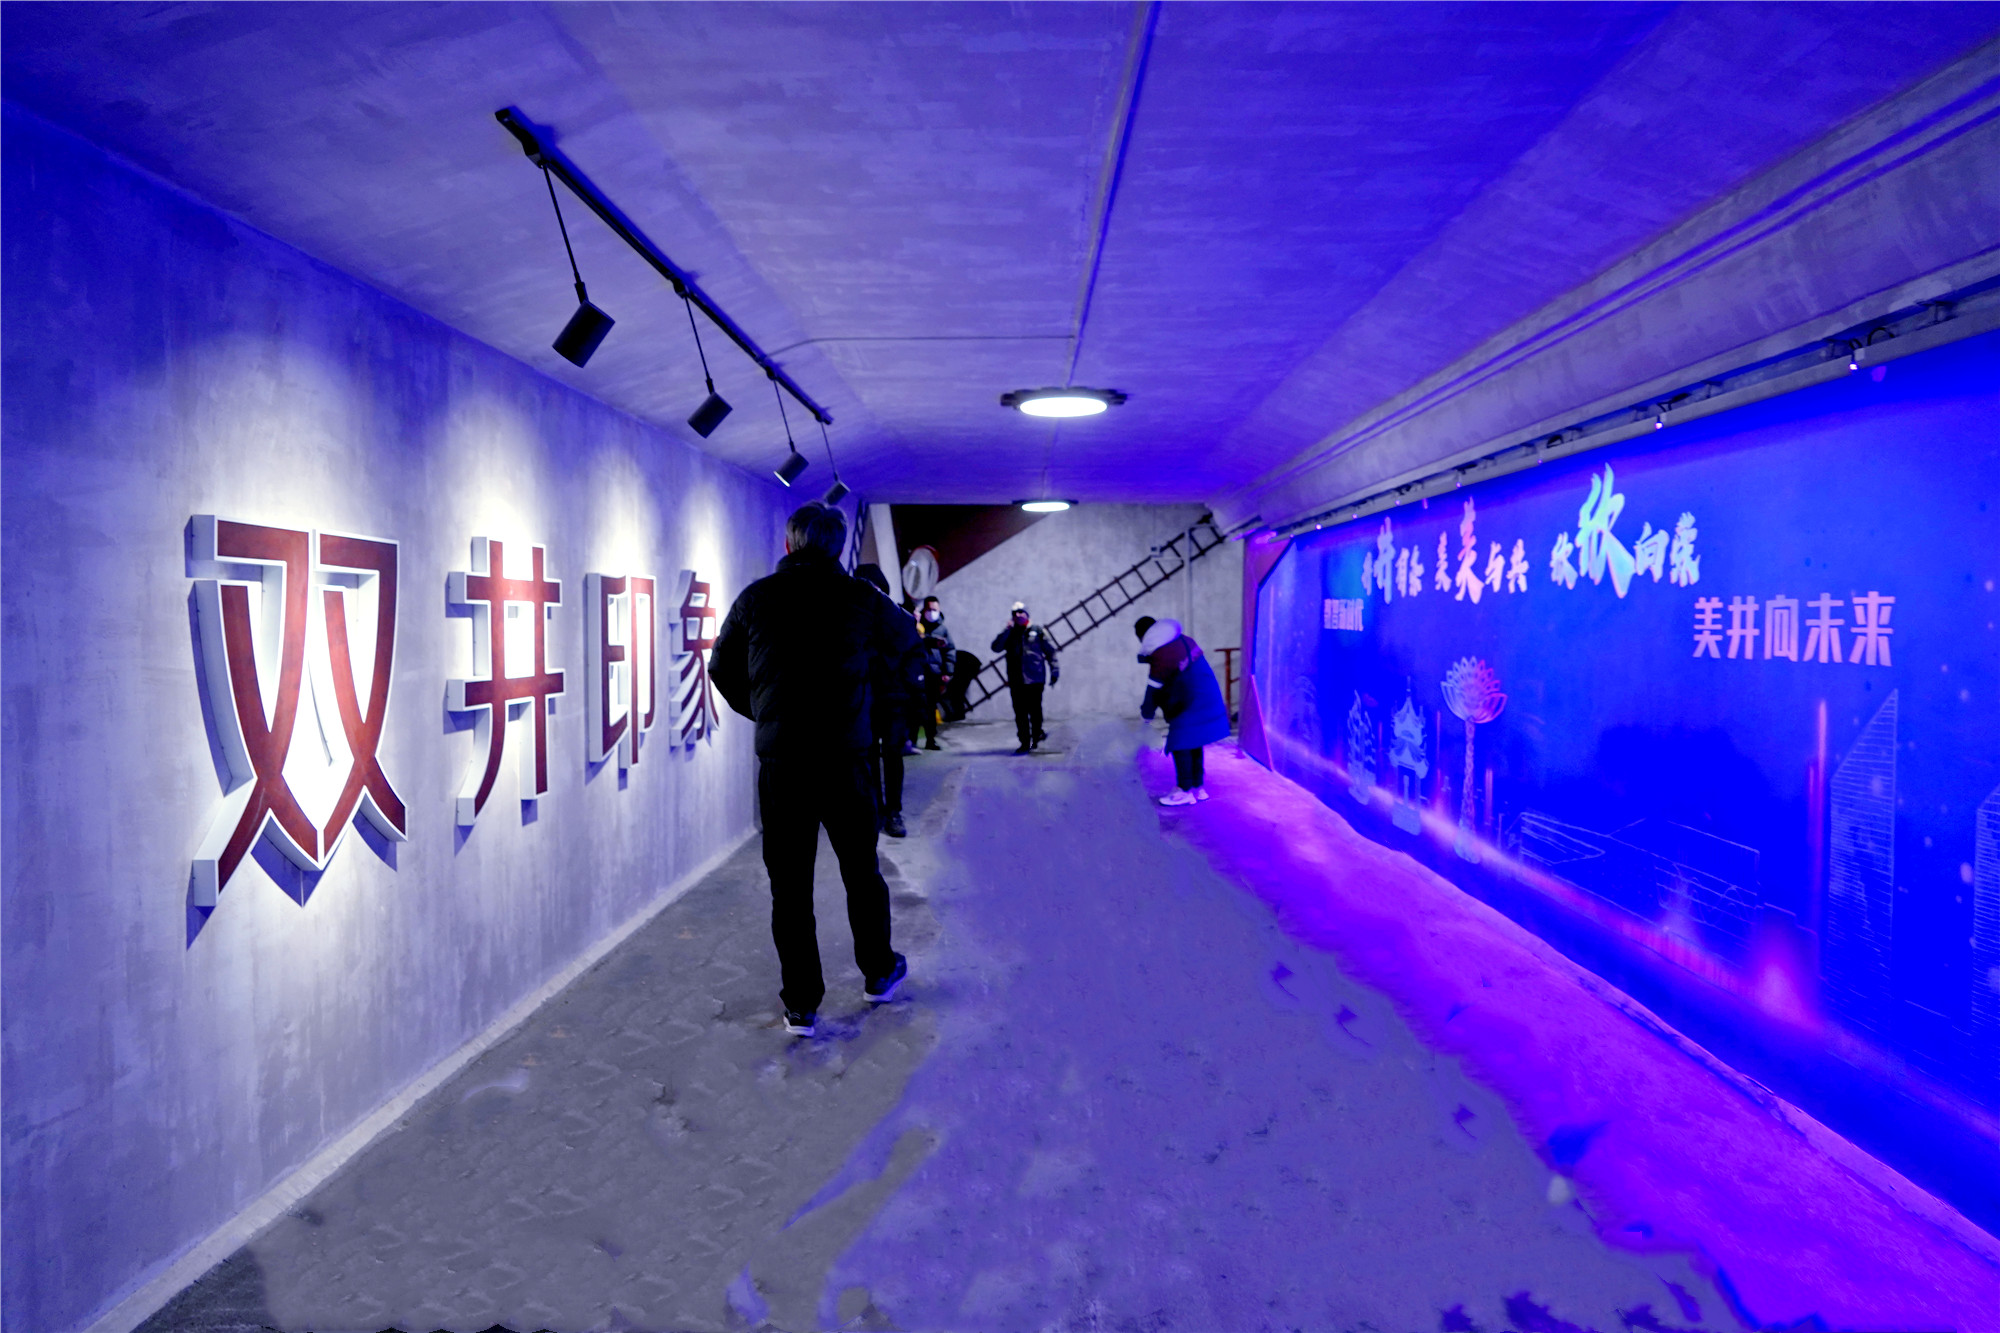 北京朝陽雙井至CBD區域慢行系統再添美麗通廊